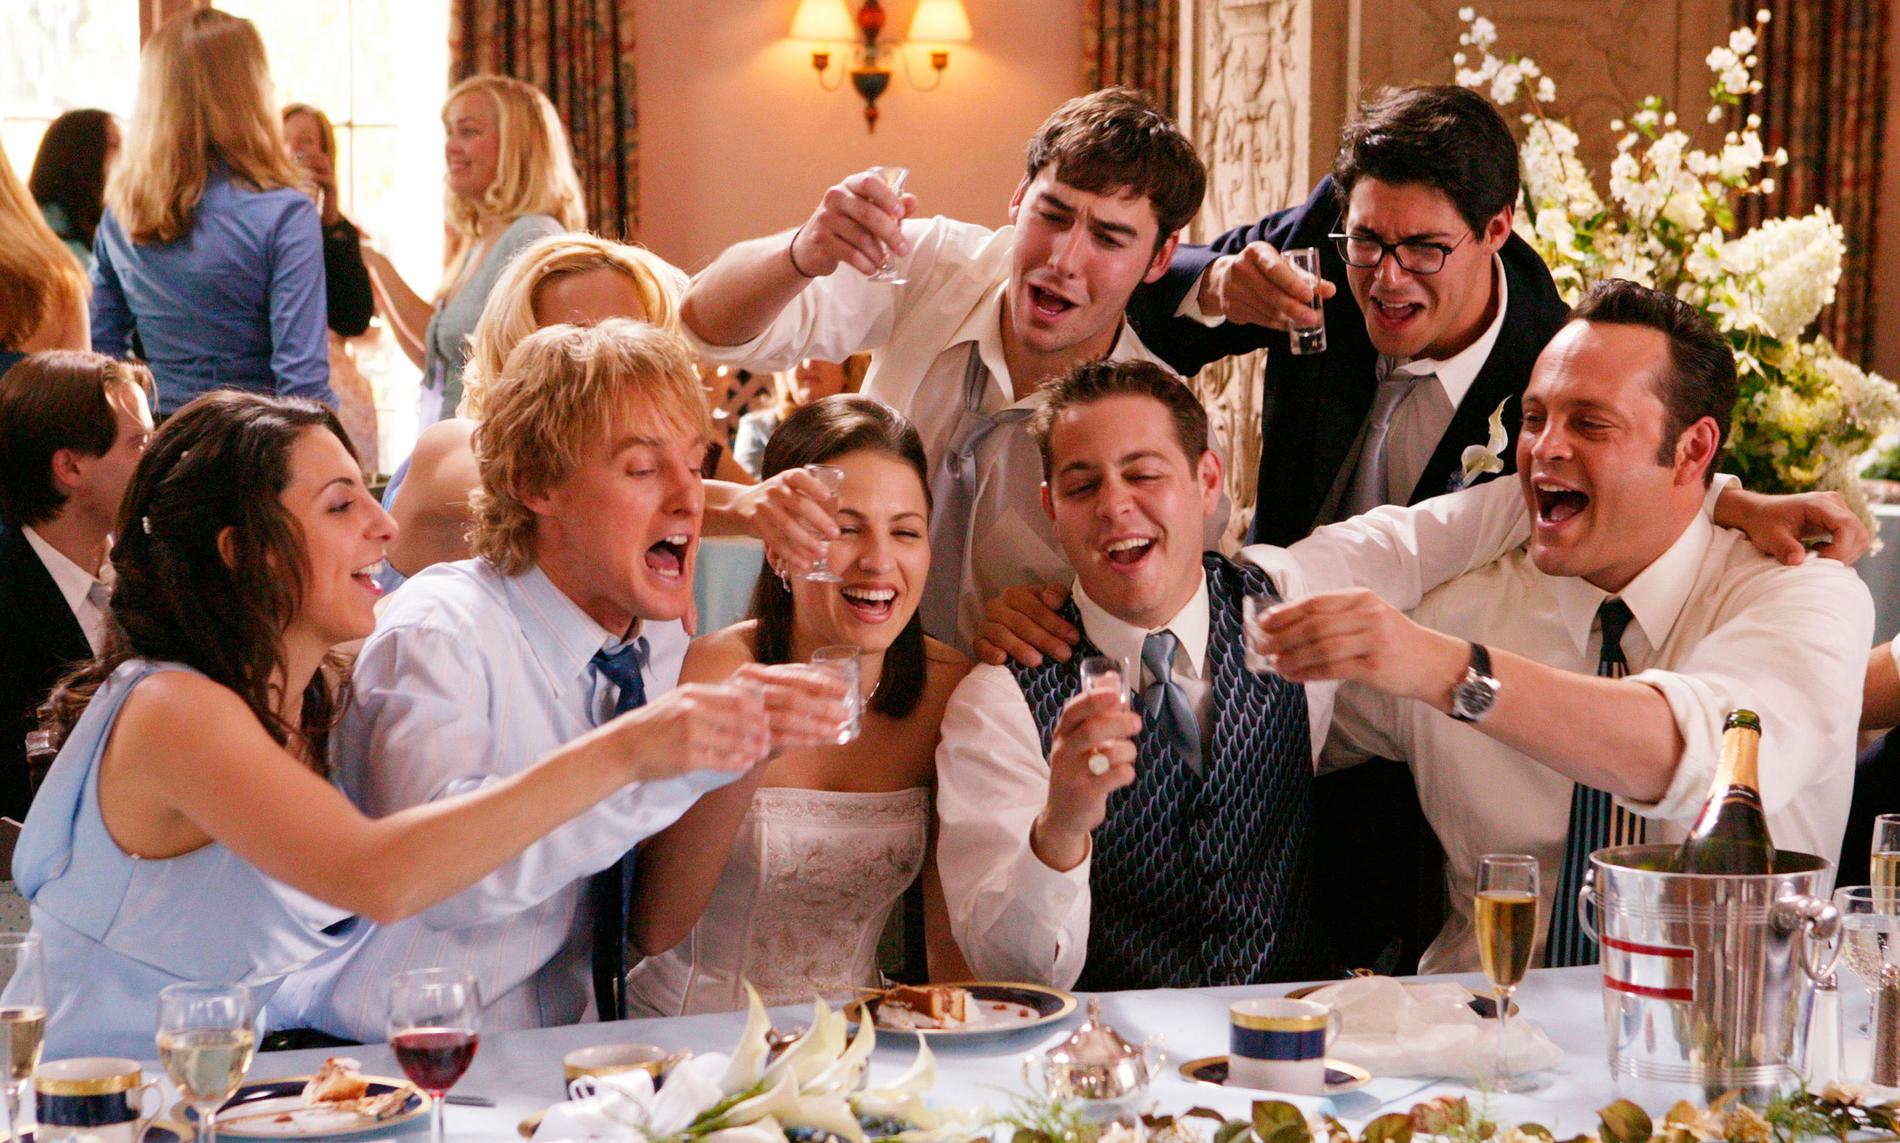 I filmen går Wilson och Vaughn oinbjudna på bröllop för att festa och ragga.